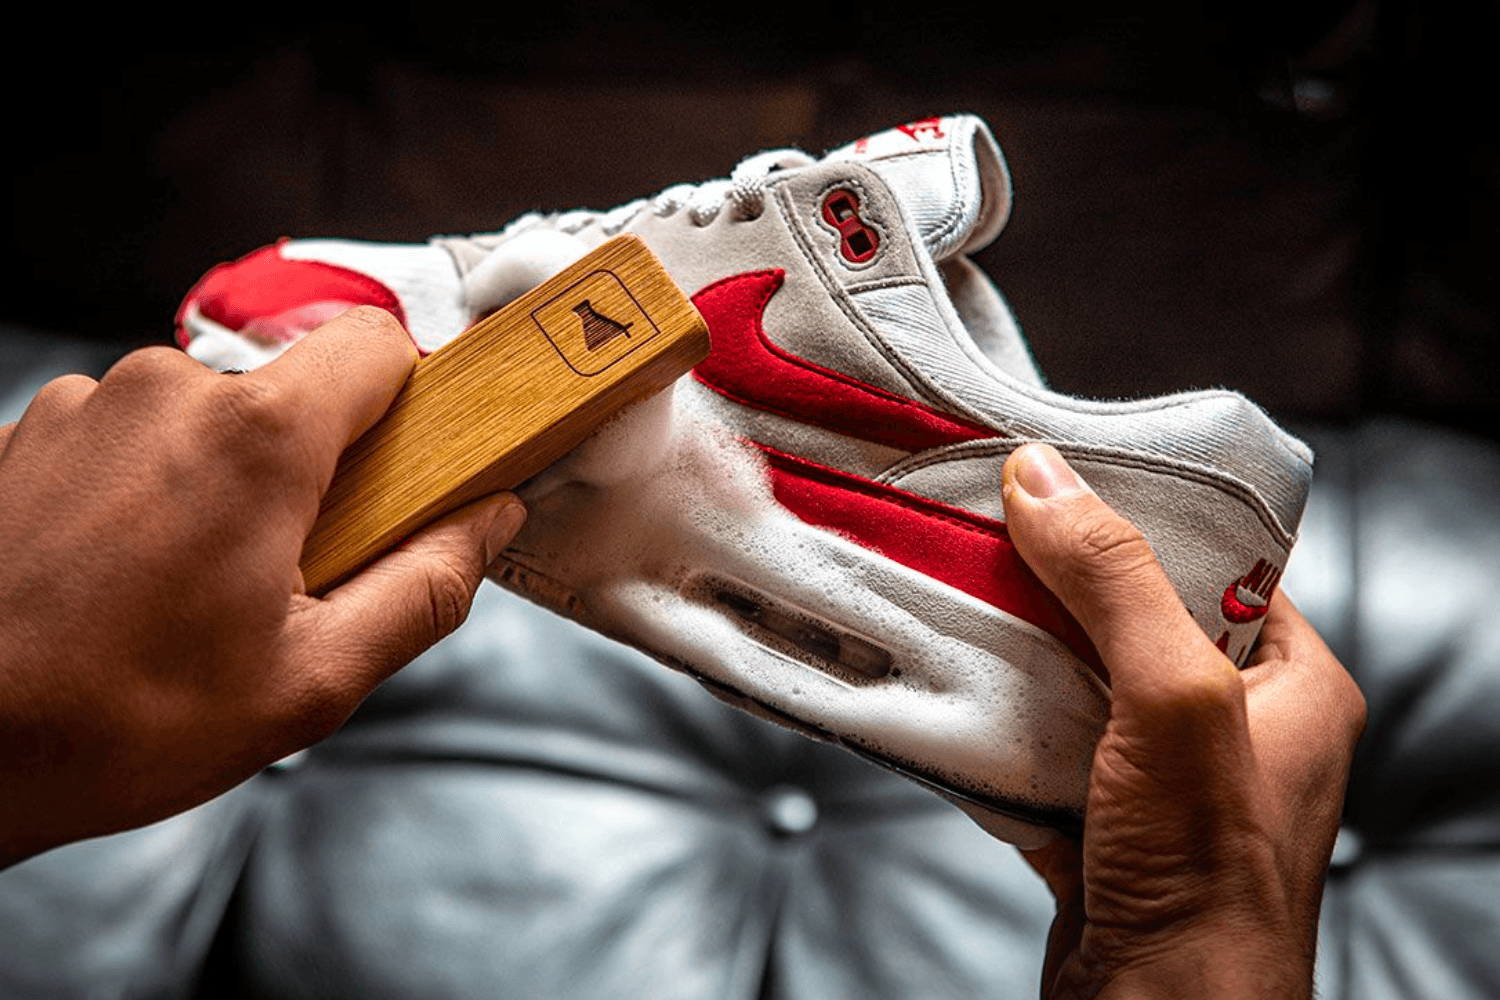 De beste tips voor het schoonmaken van witte sneakers